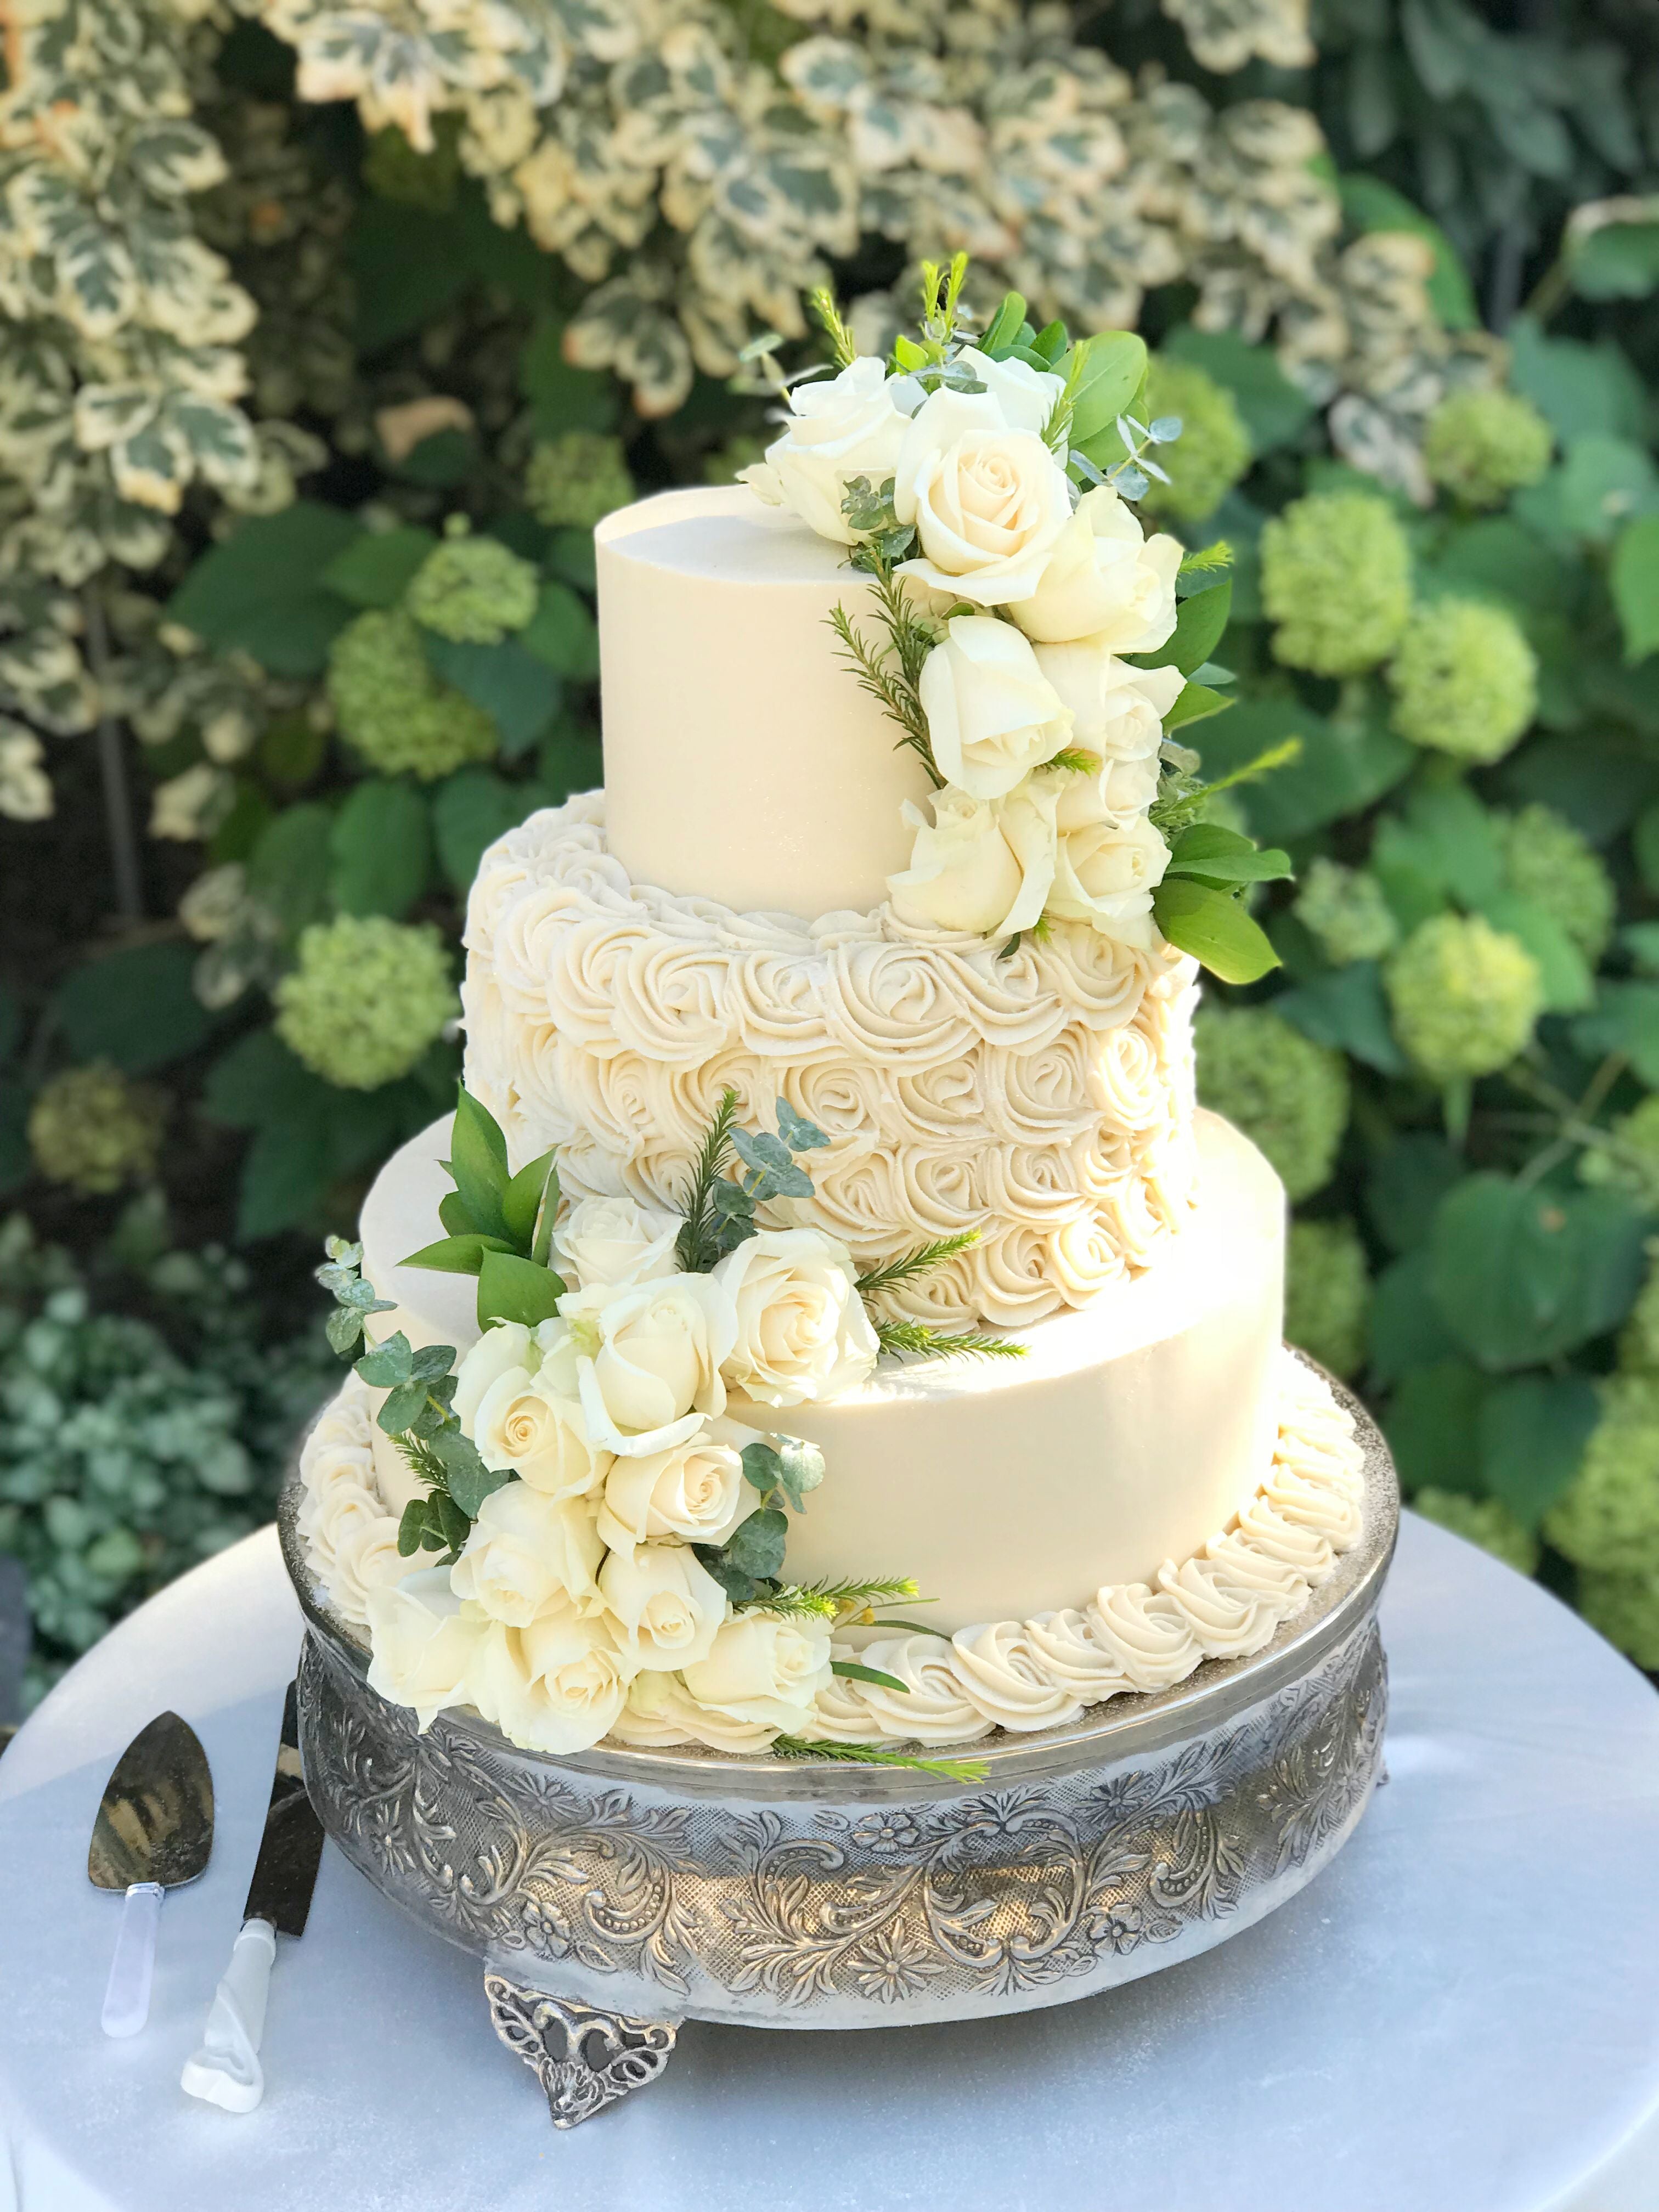 Not your basic Wedding Cake